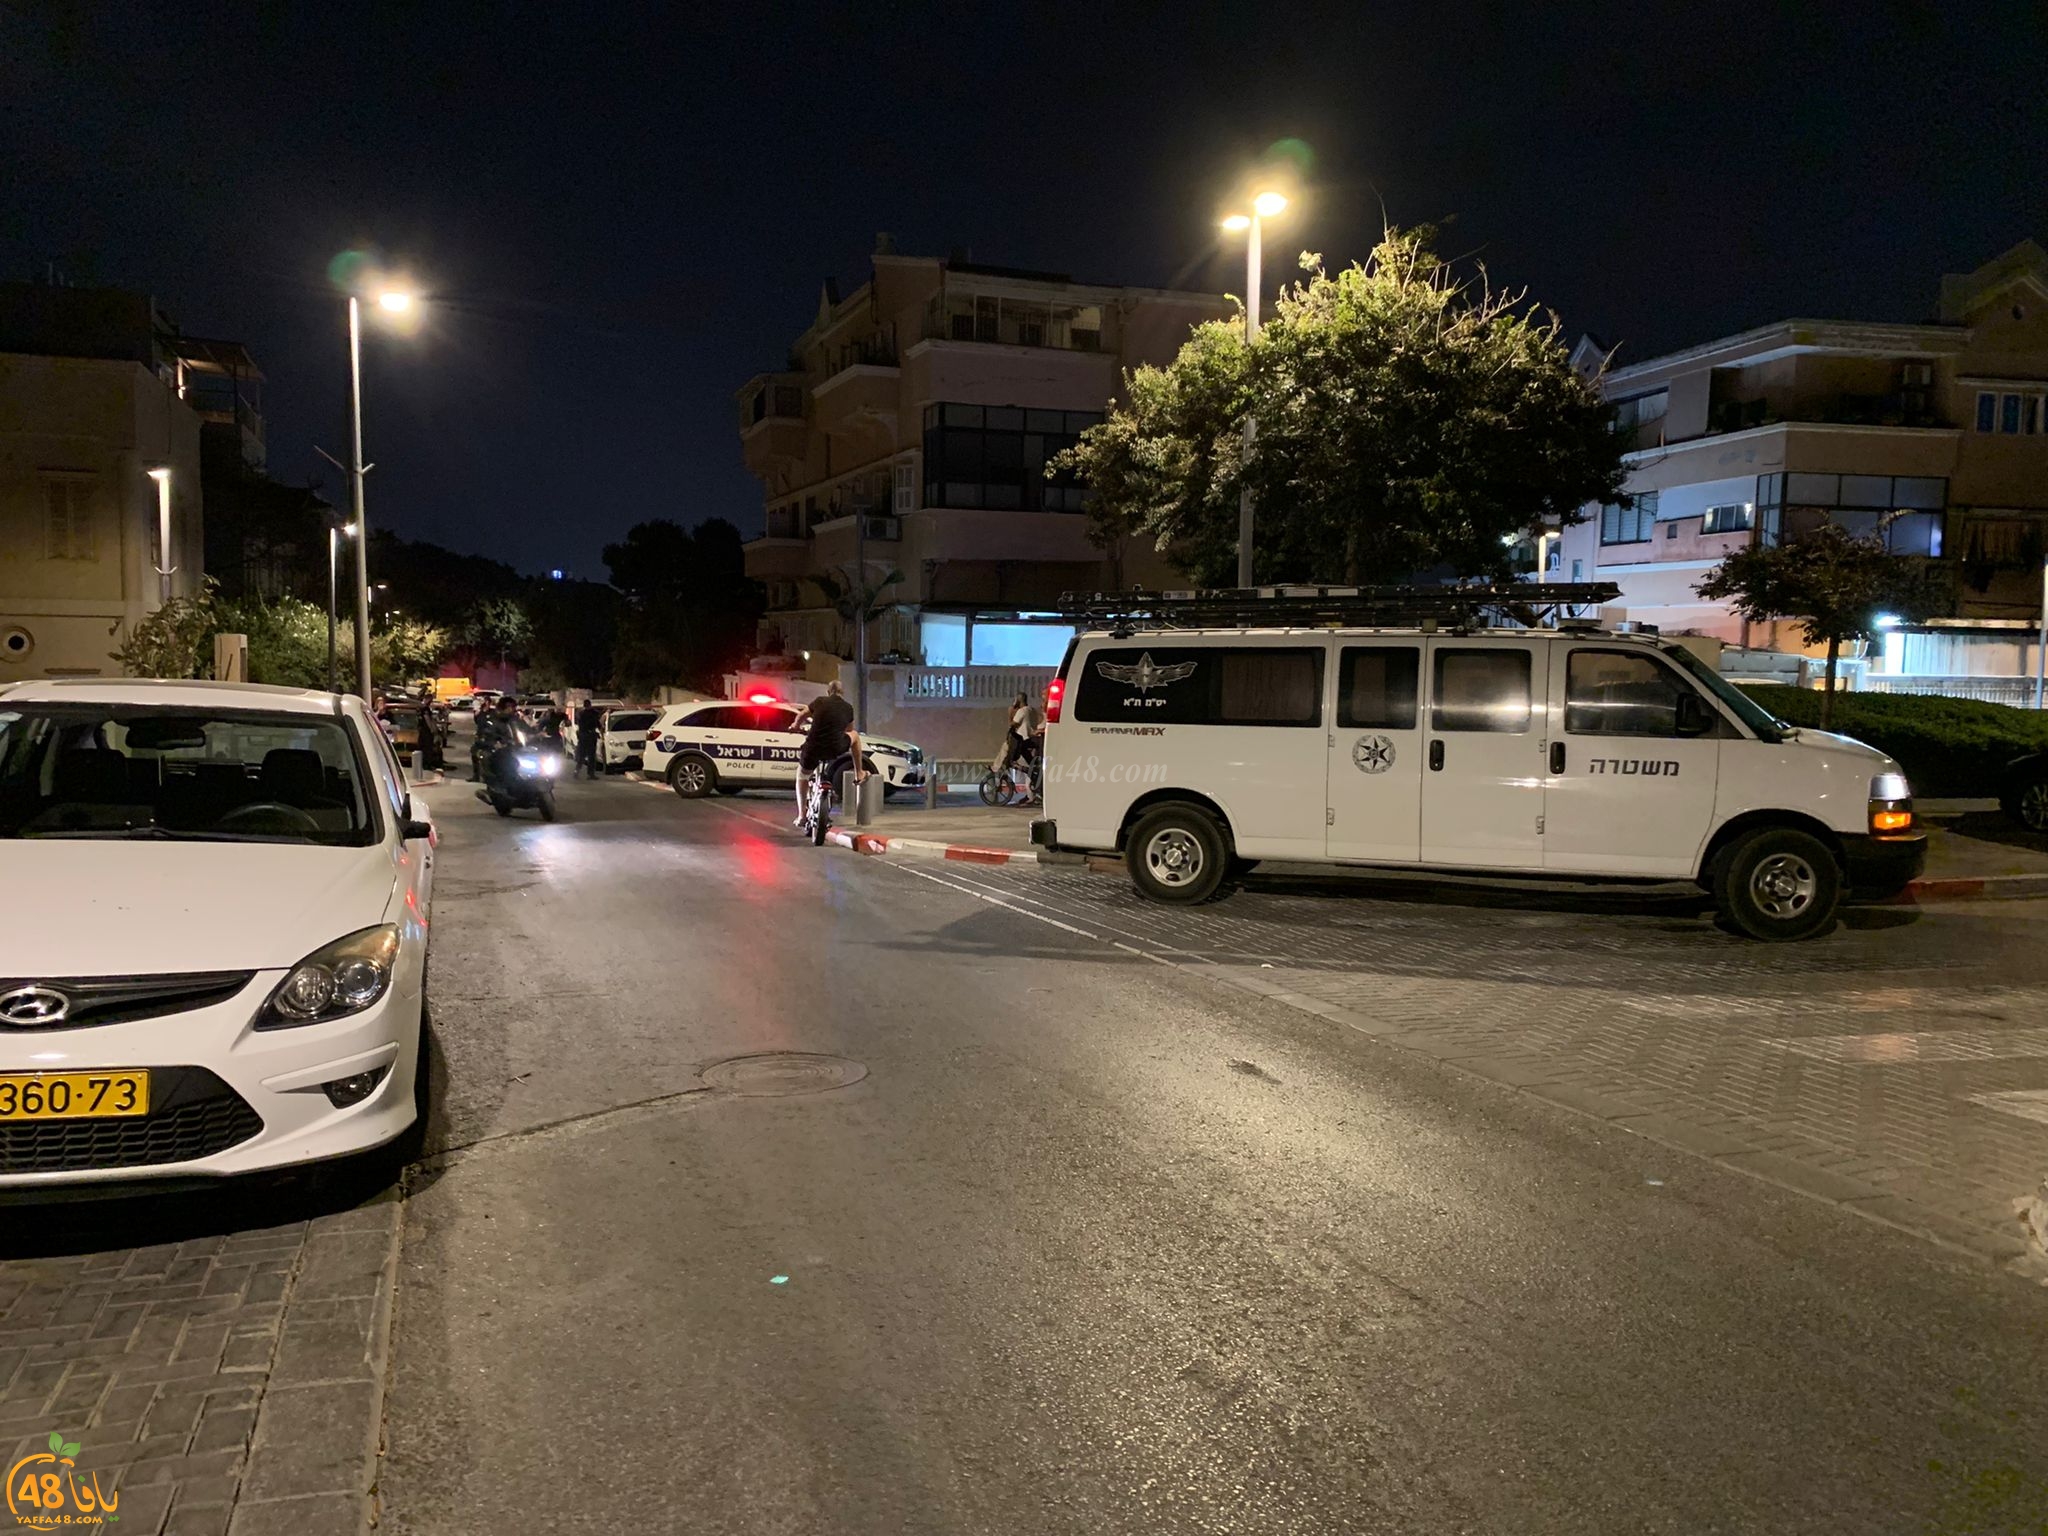  اغلاق شارع في يافا على خلفية إطلاق نار دون إصابات